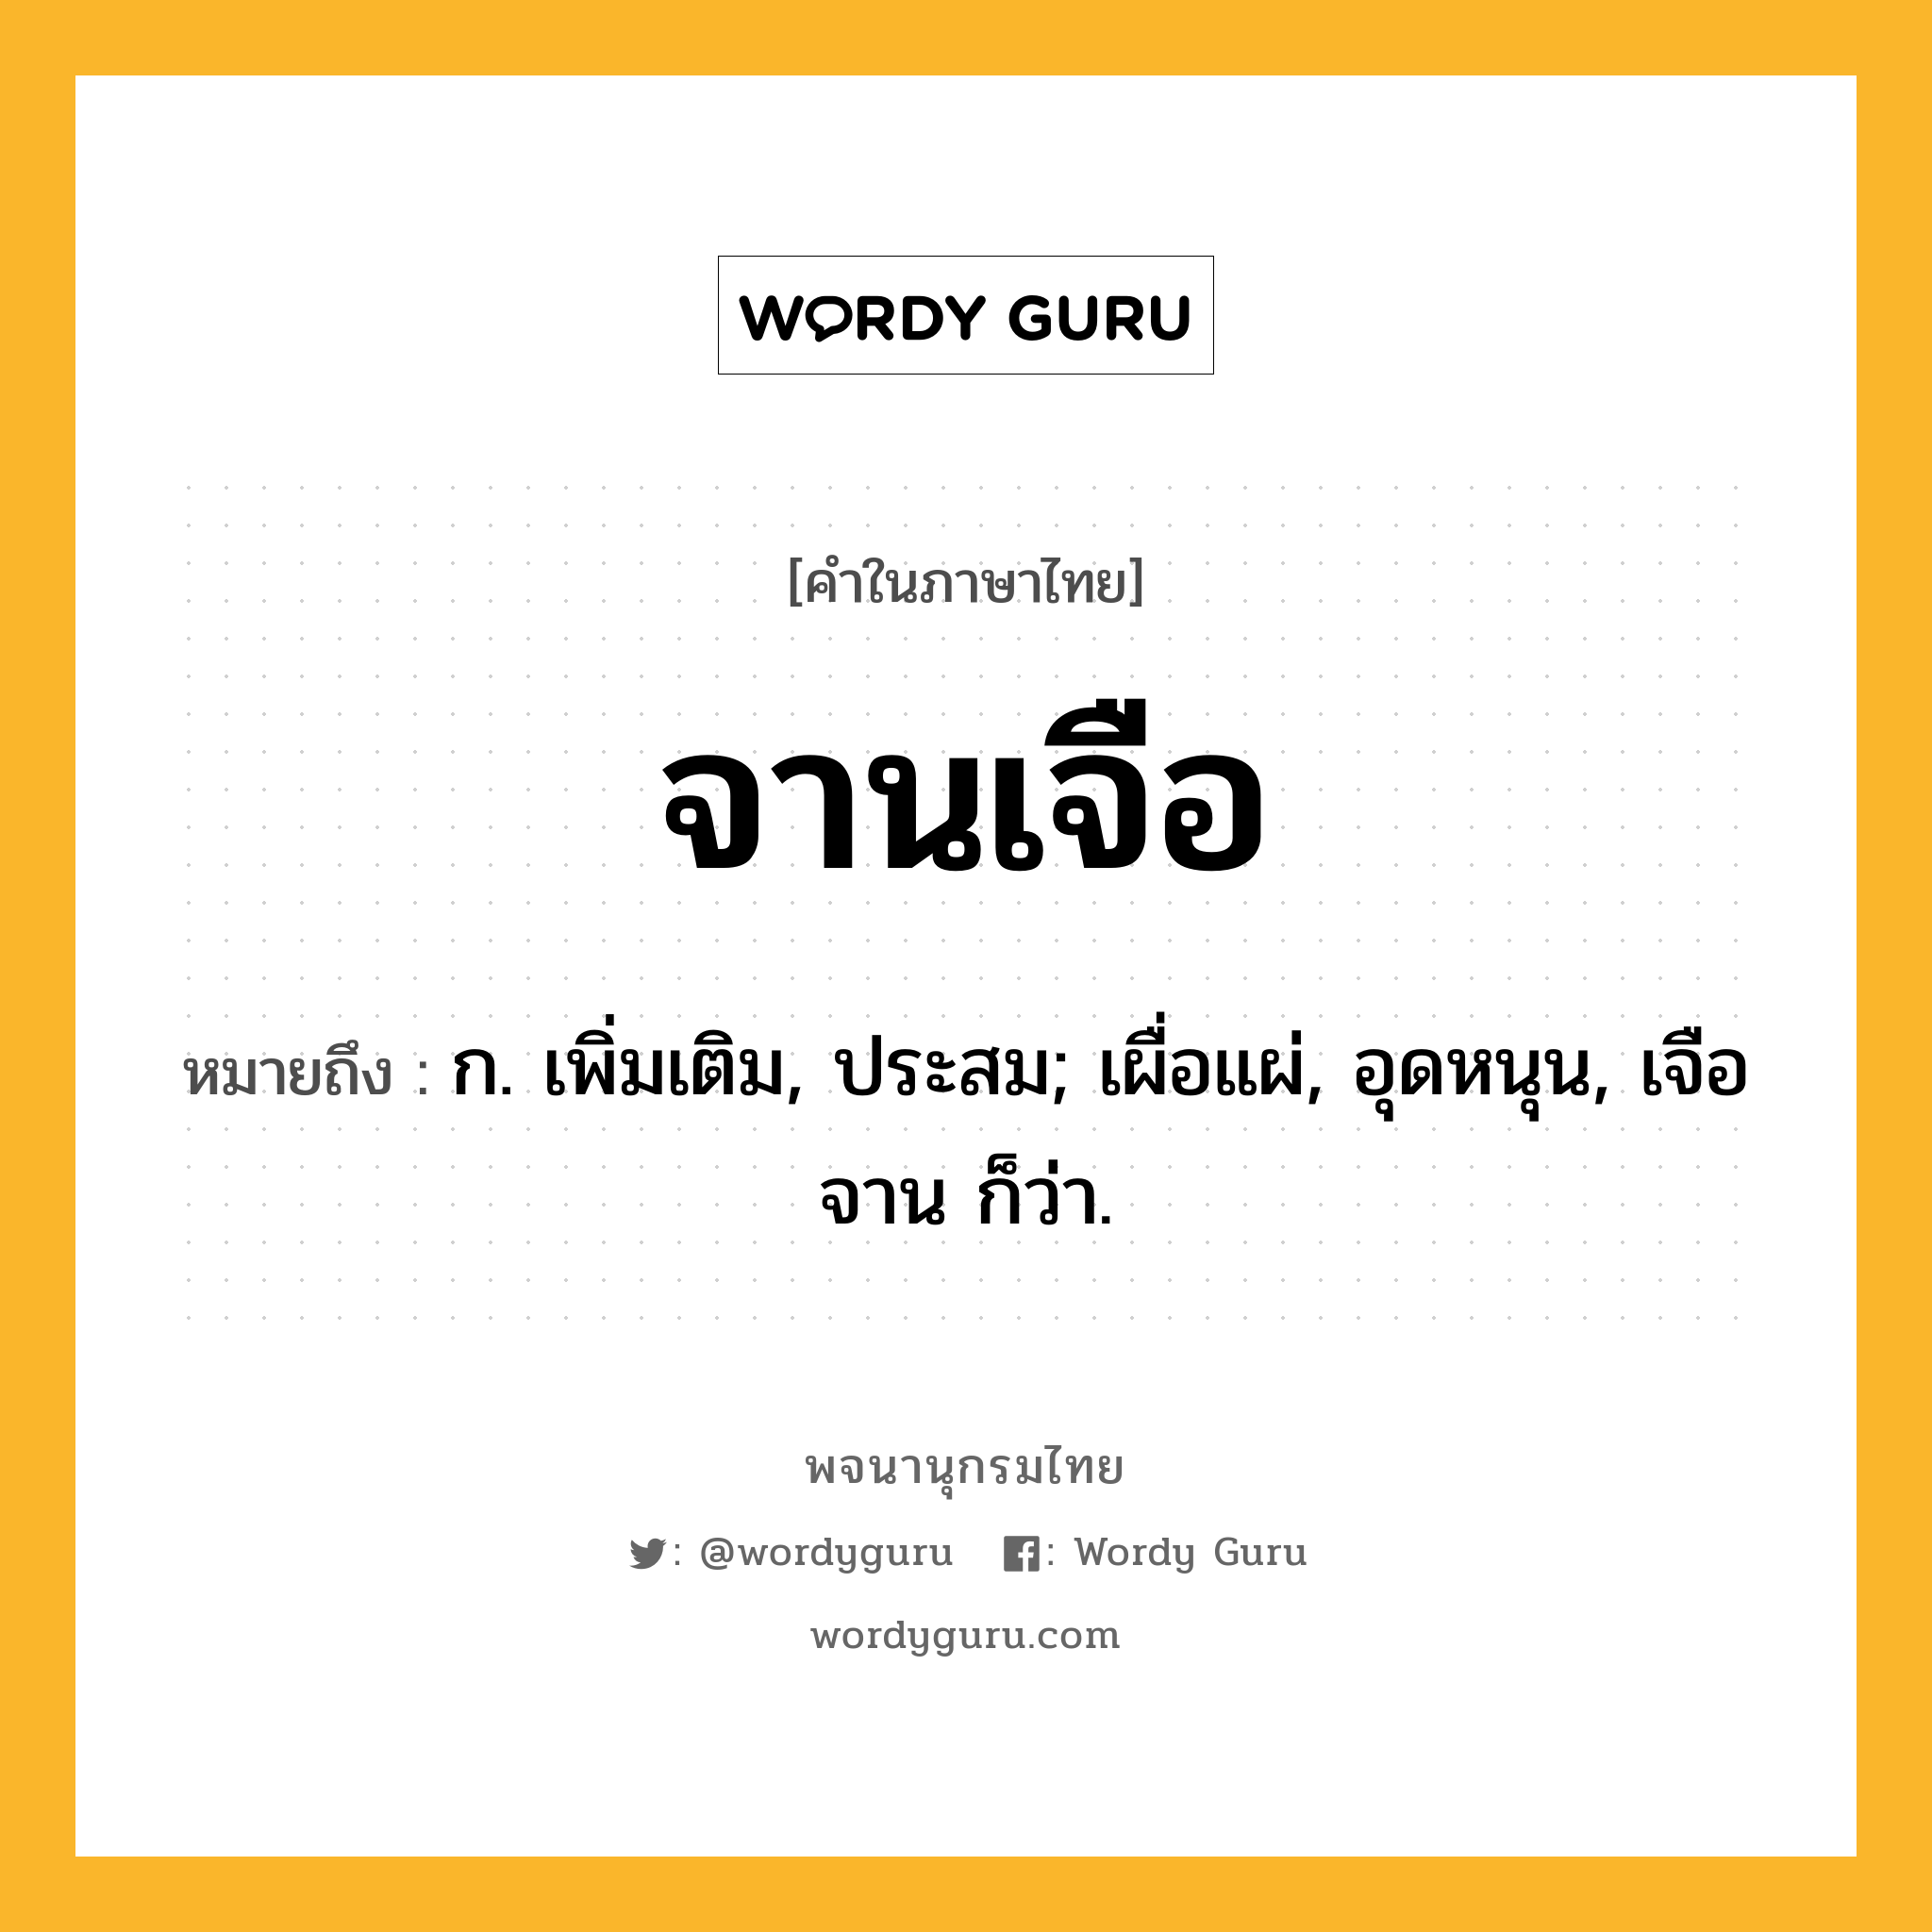 จานเจือ ความหมาย หมายถึงอะไร?, คำในภาษาไทย จานเจือ หมายถึง ก. เพิ่มเติม, ประสม; เผื่อแผ่, อุดหนุน, เจือจาน ก็ว่า.